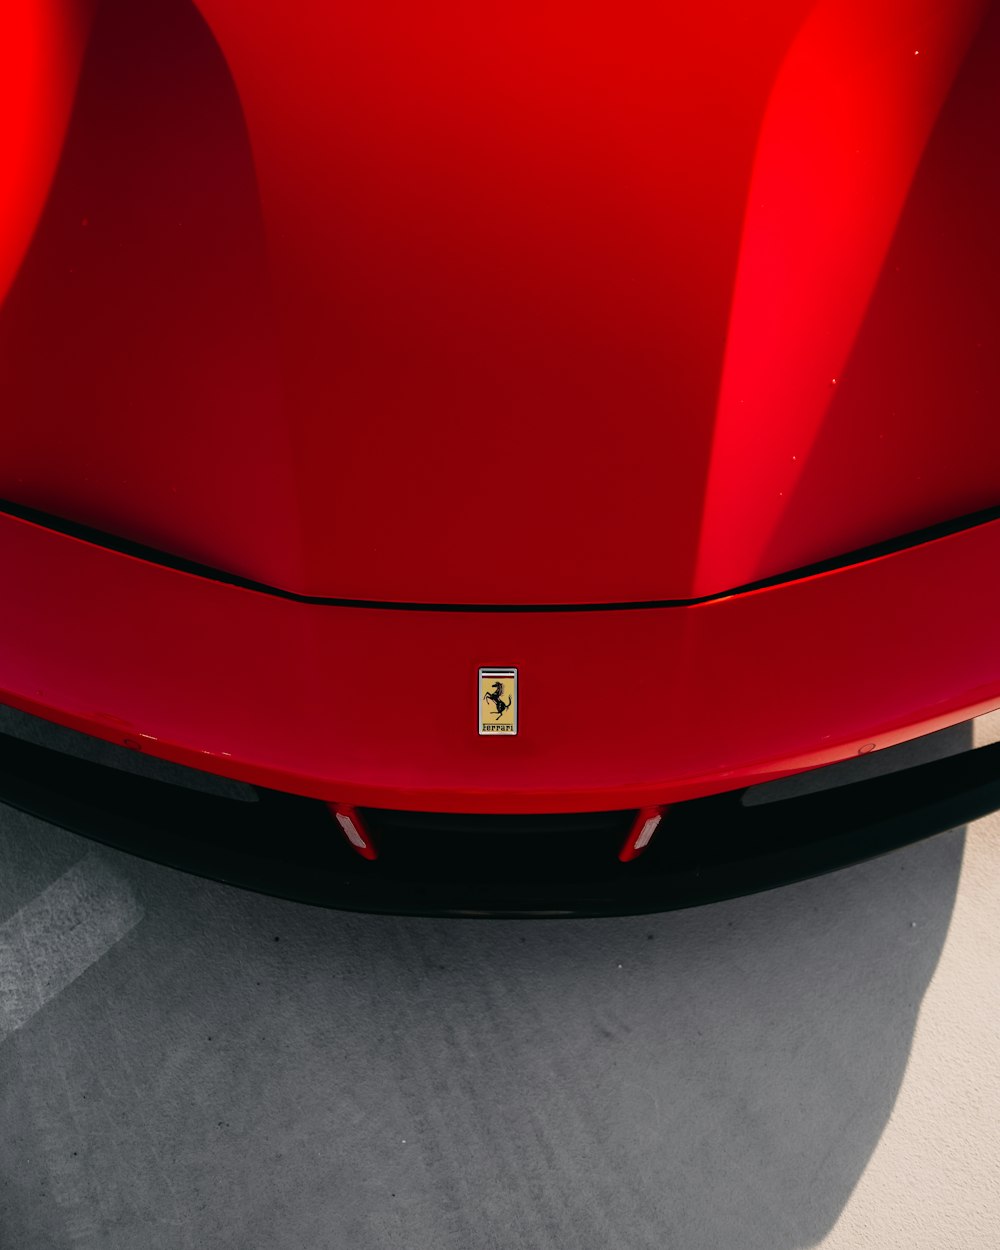 Rotes Ferrari-Auto auf grauem Betonboden